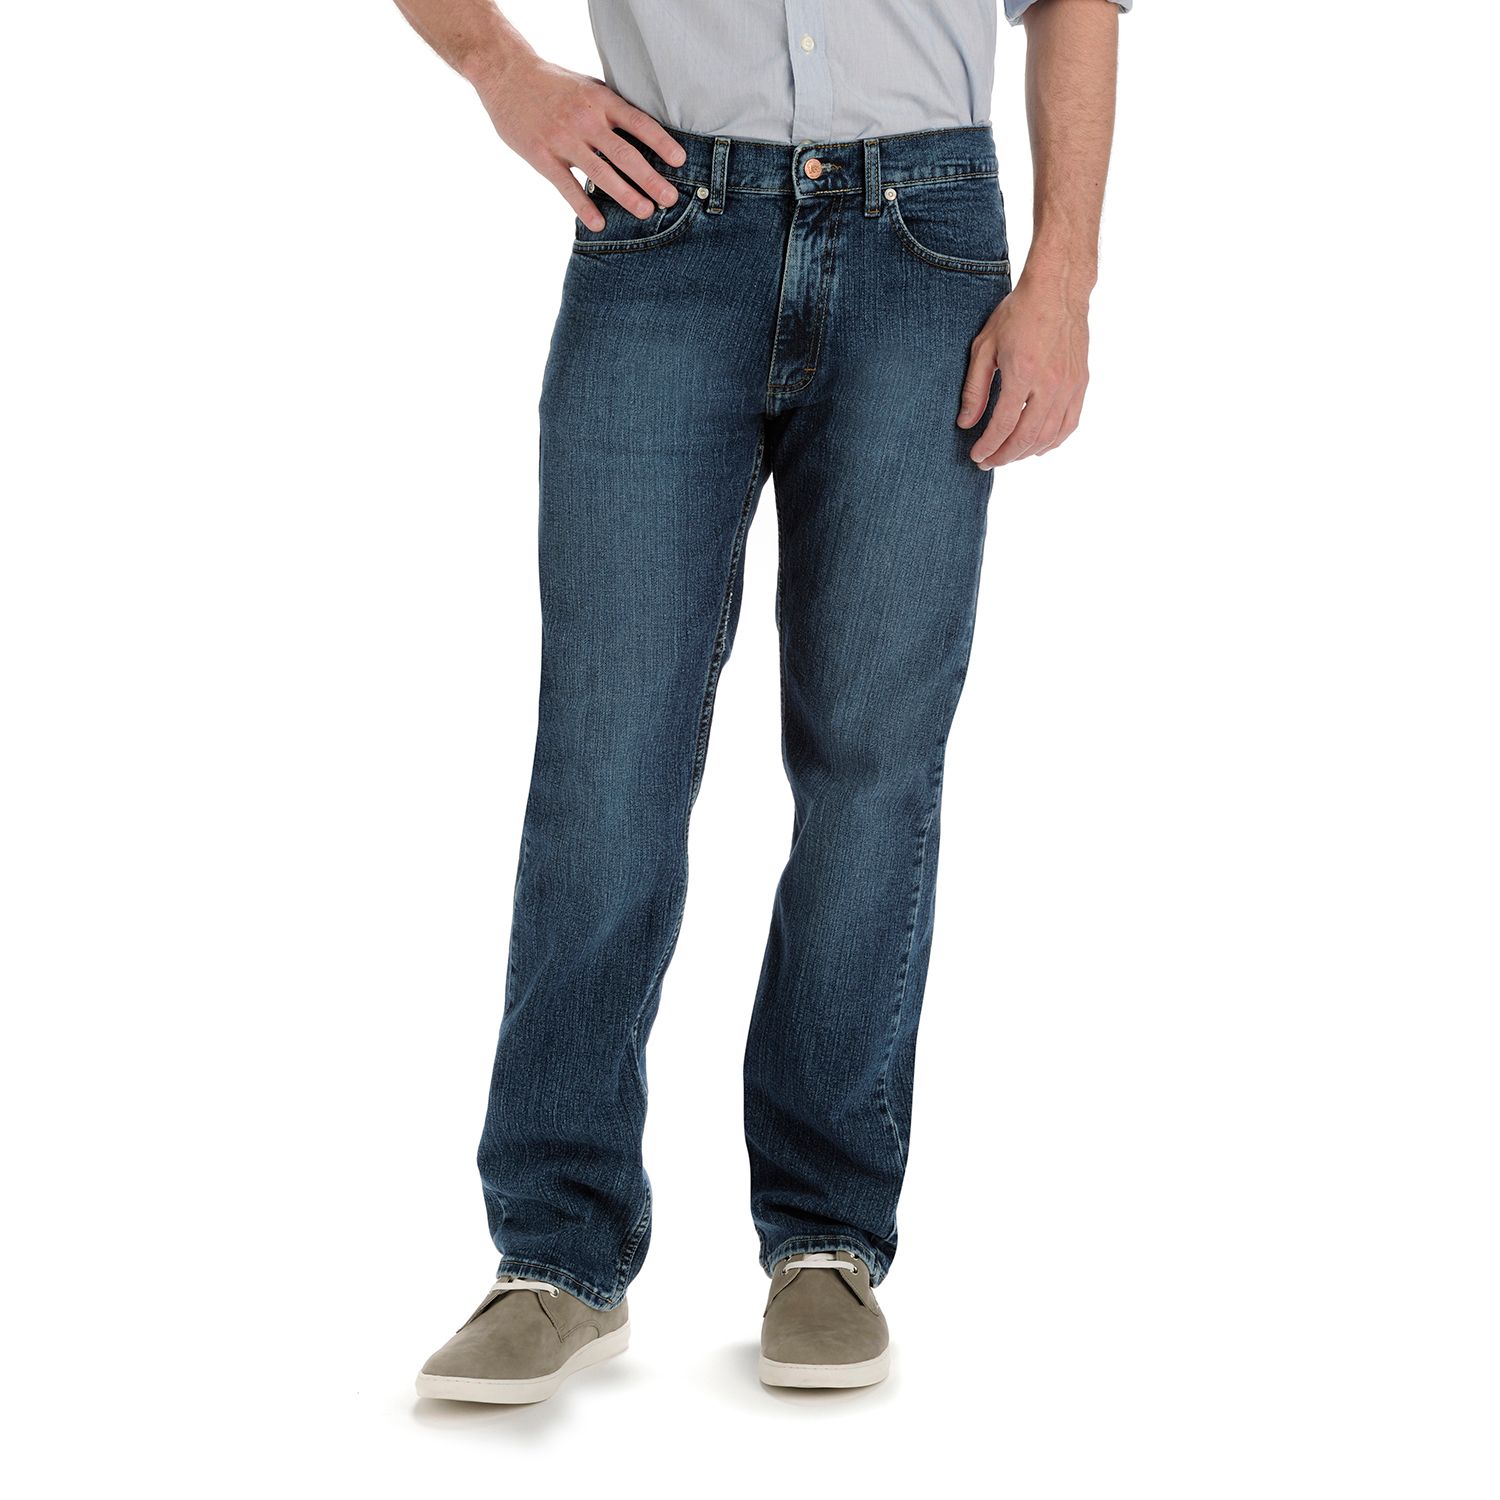 Image for Lee Men's Premium Select Regular Straight Leg Jeans at Kohl's.